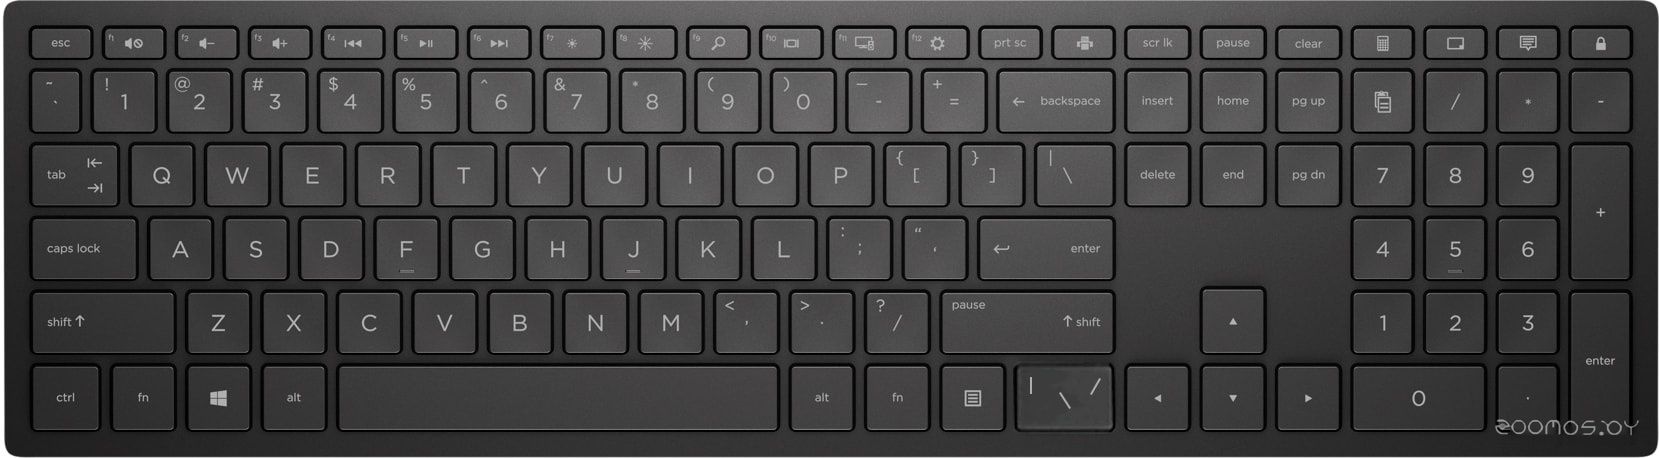 Клавиатура HP Pavilion 600 (черный)